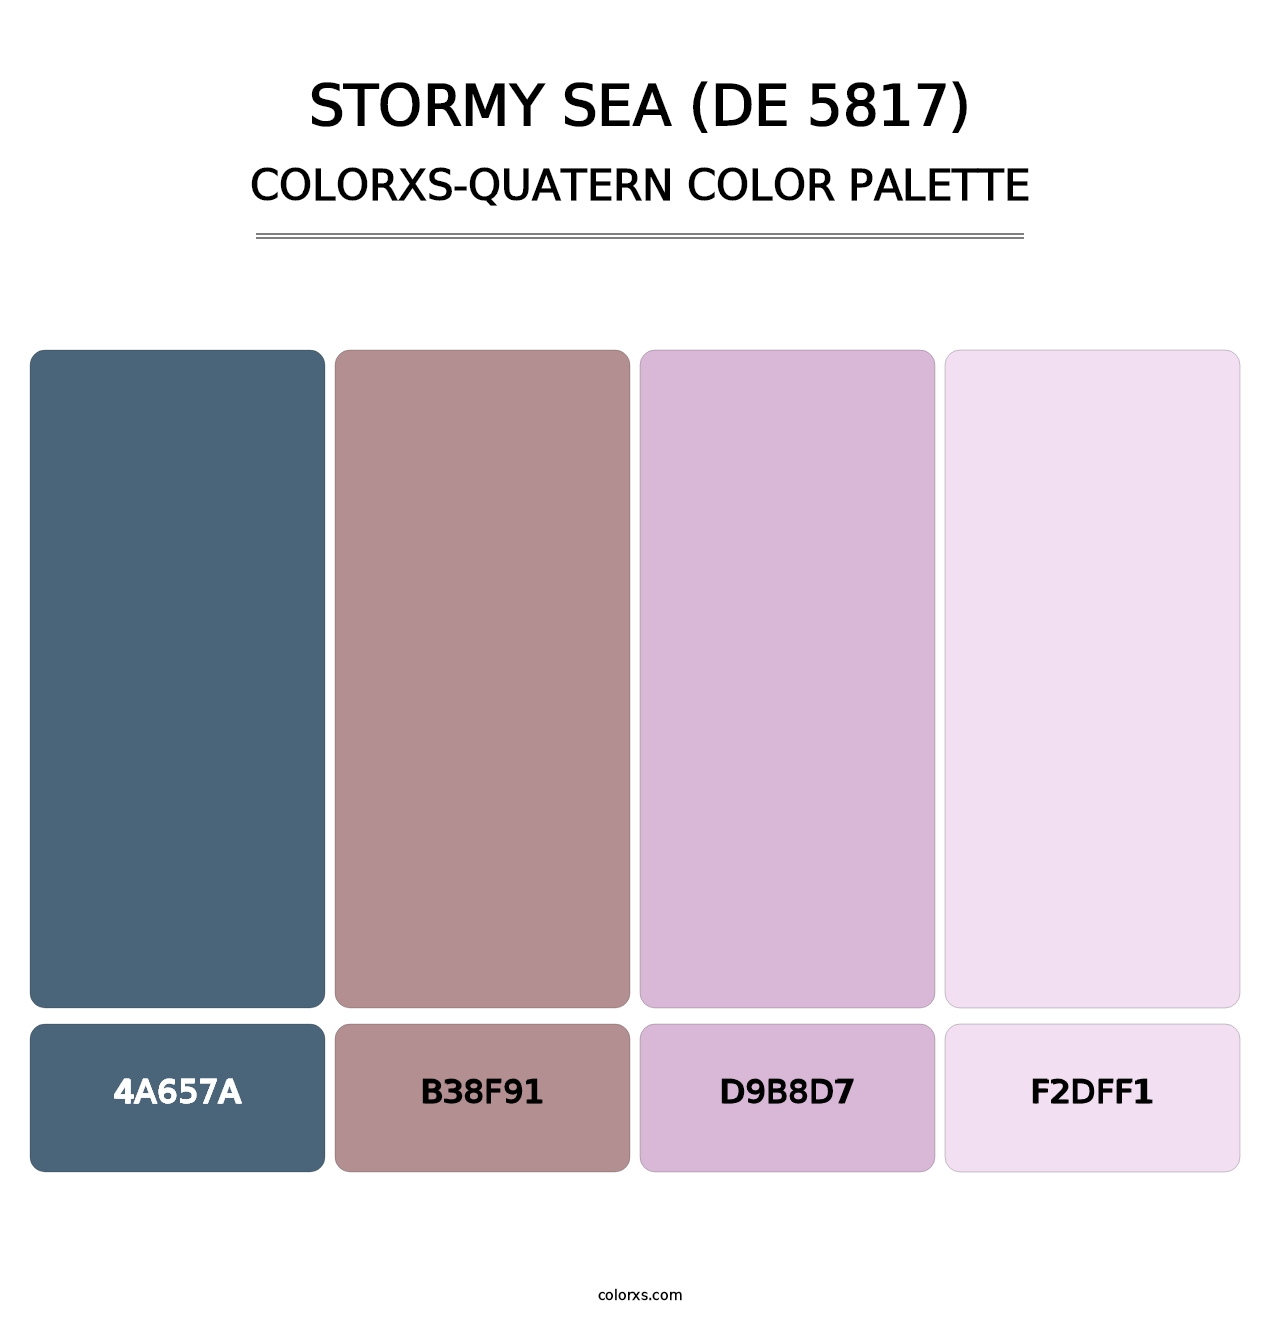 Stormy Sea (DE 5817) - Colorxs Quatern Palette